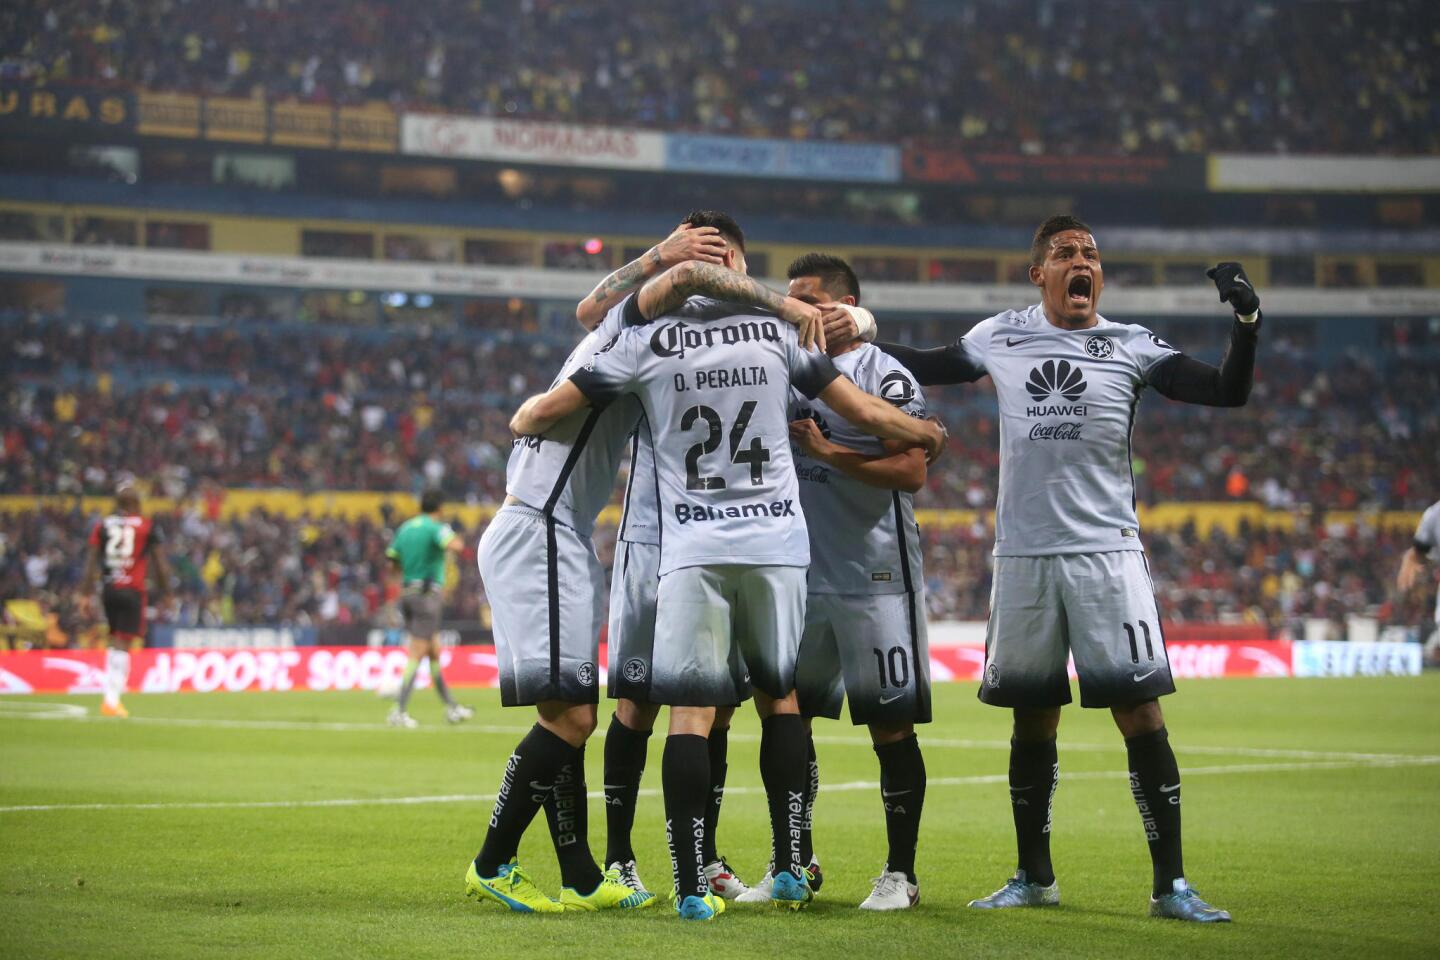 Jugadores del América celebran una anotación ante Atlas, en un partido de la jornada 2 del Torneo Clausura del fútbol mexicano, en el estadio Jalisco de la ciudad de Guadalajara (México).